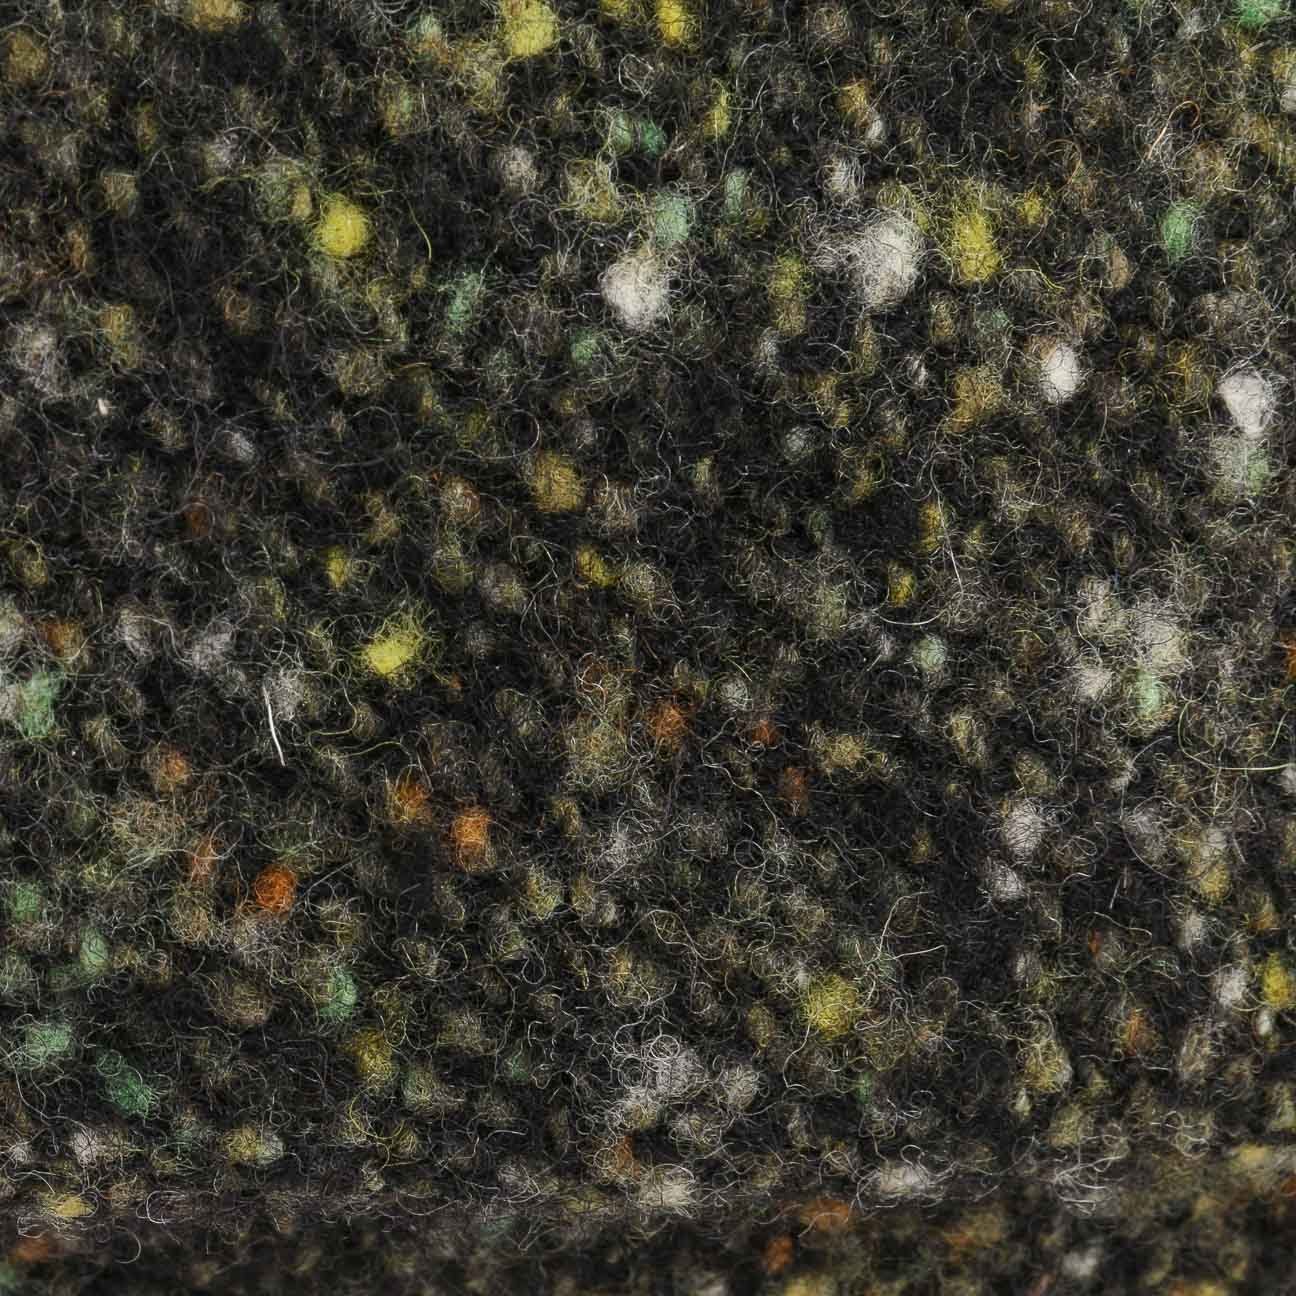 Stetson Flat oliv-schwarz (1-St) Schirm Cap mit Wollcap